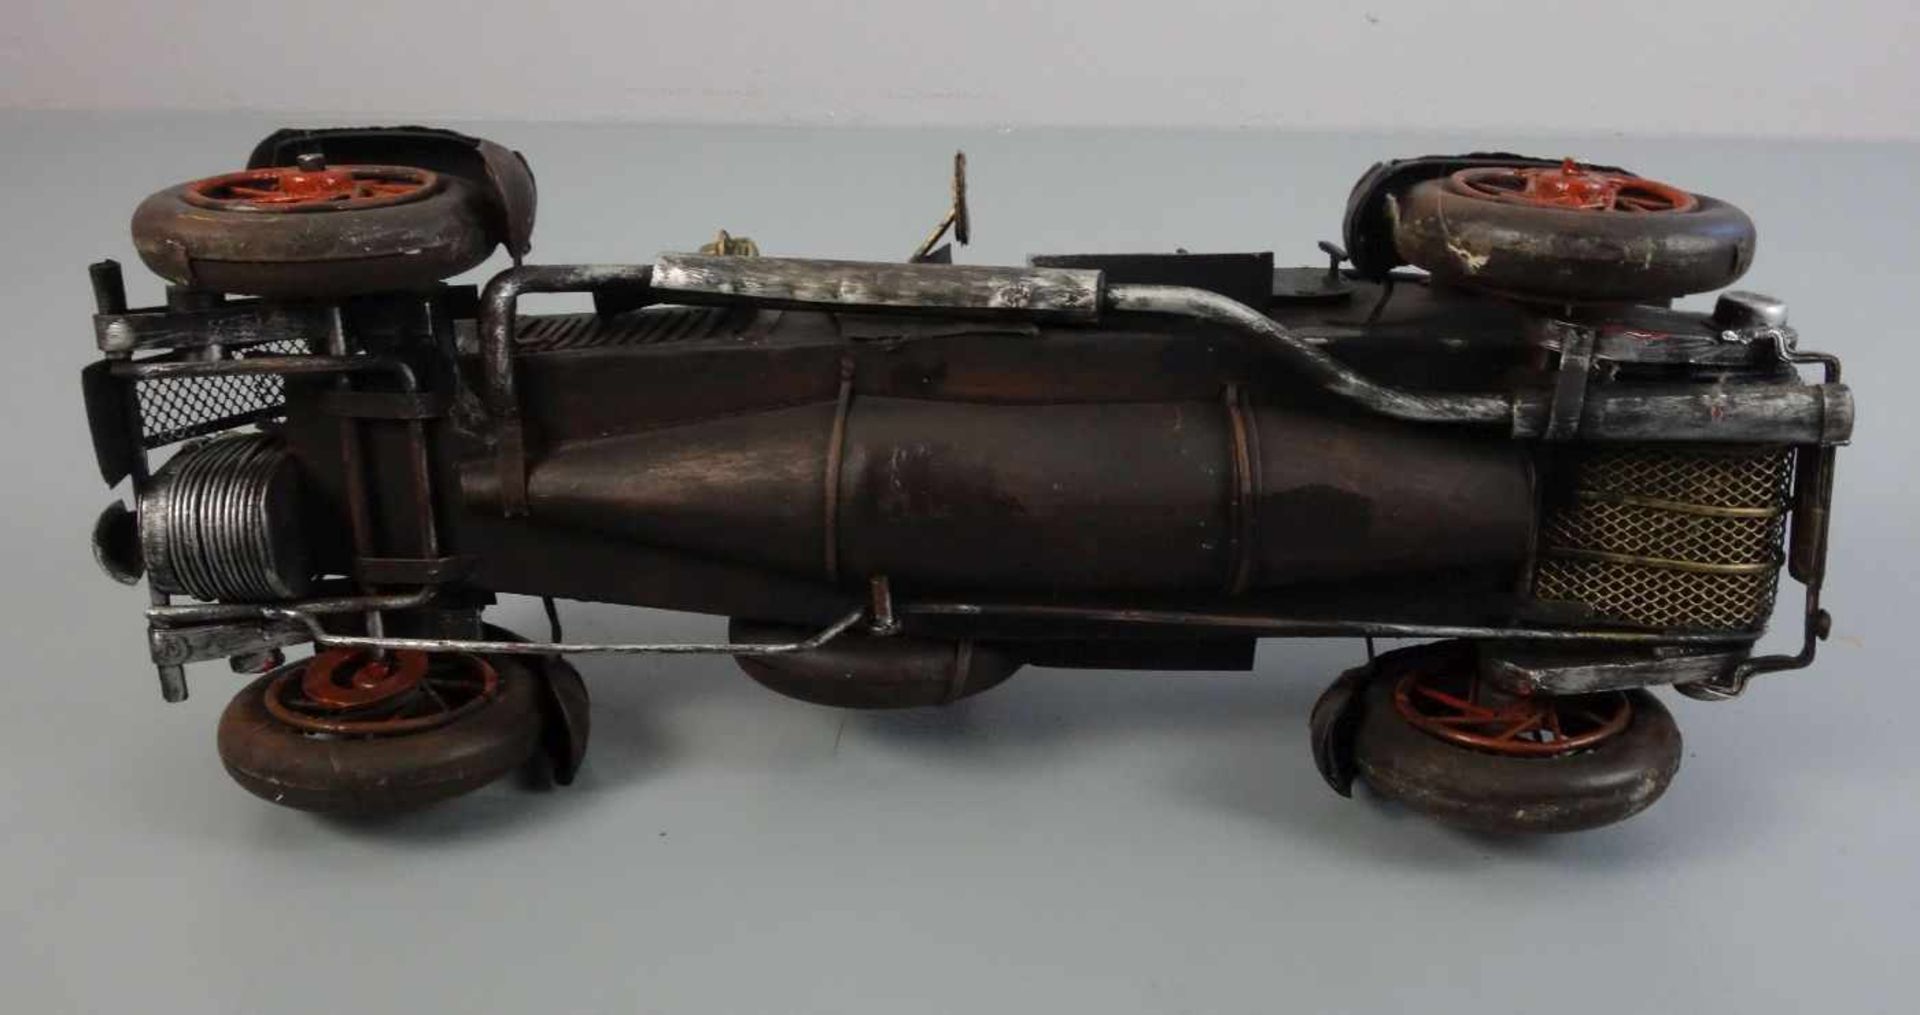 BLECHSPIELZEUG / MODELLAUTO "Oldtimer" / tin toy car, Eisenblech, teils durchbrochen gearbeitet - Bild 5 aus 5